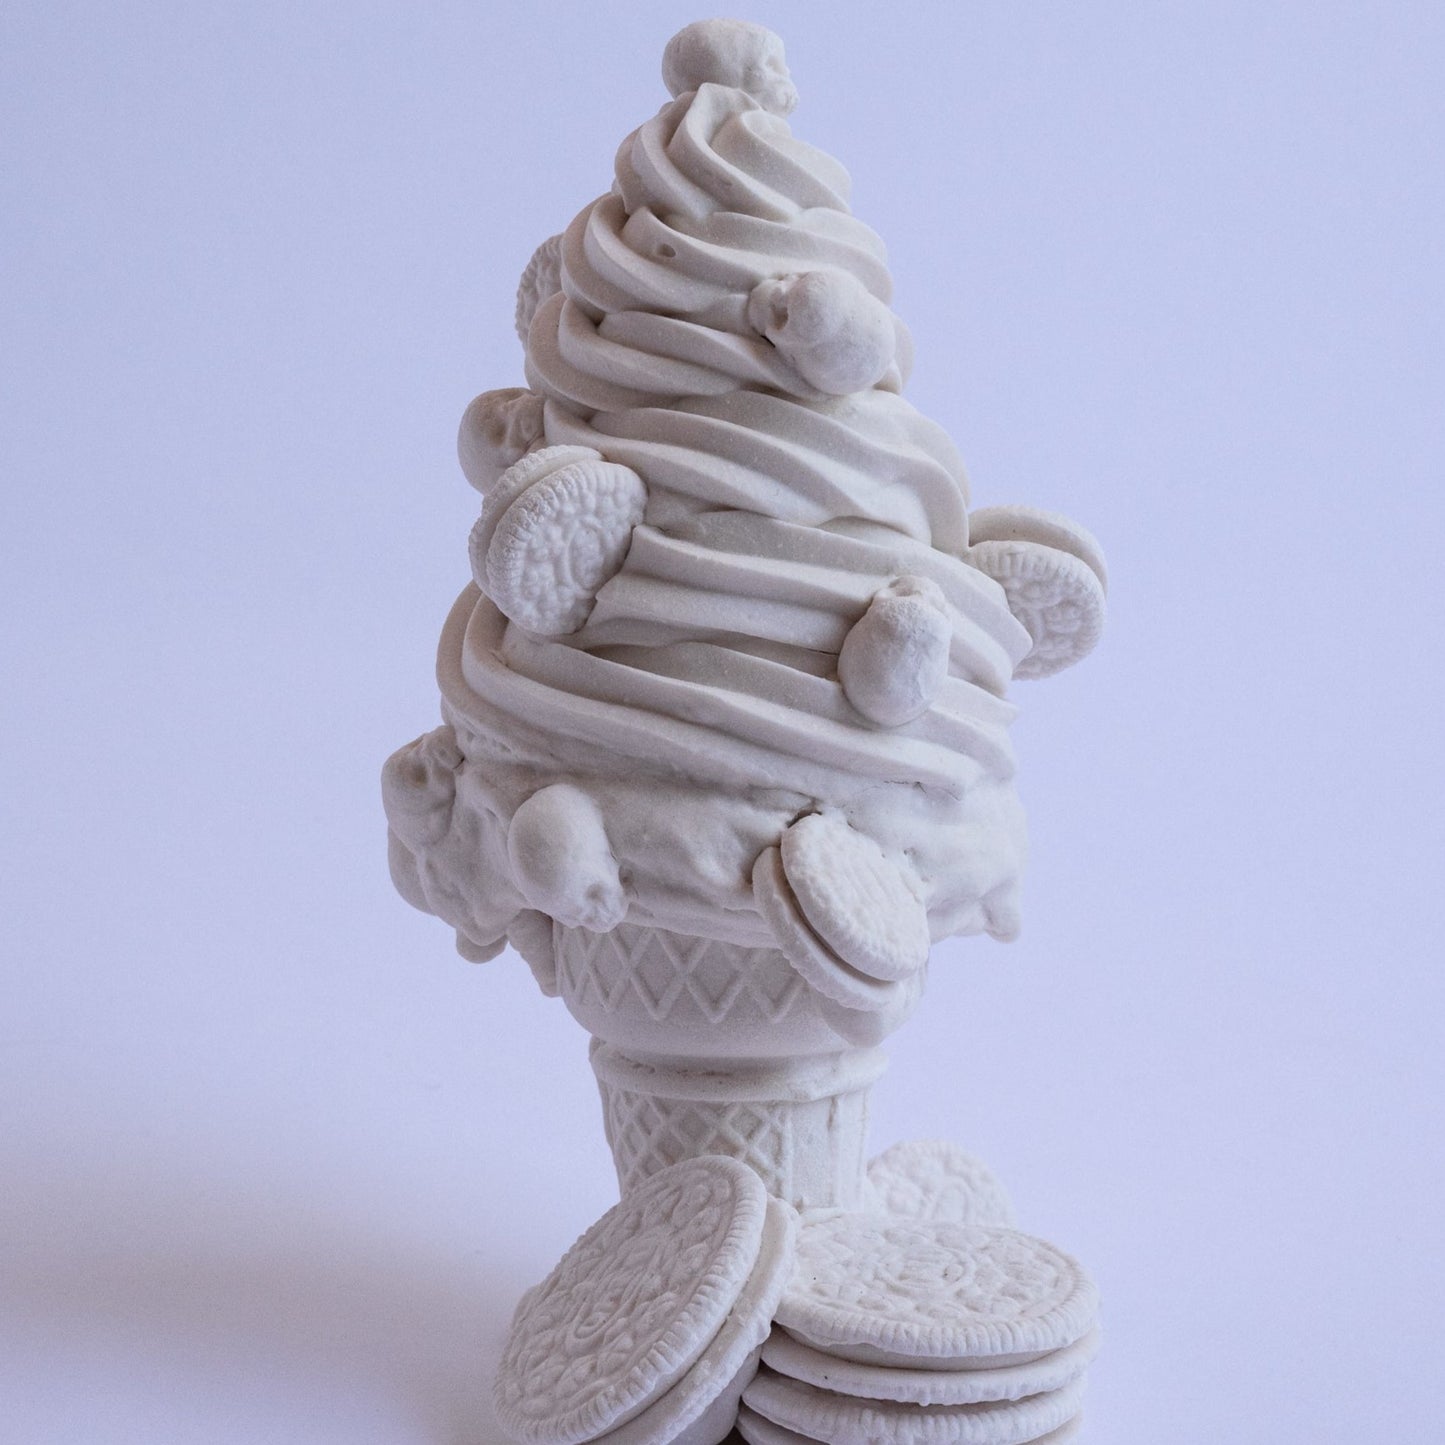 Soft Serve 1 (One of a Kind Porcelain Sculpture)